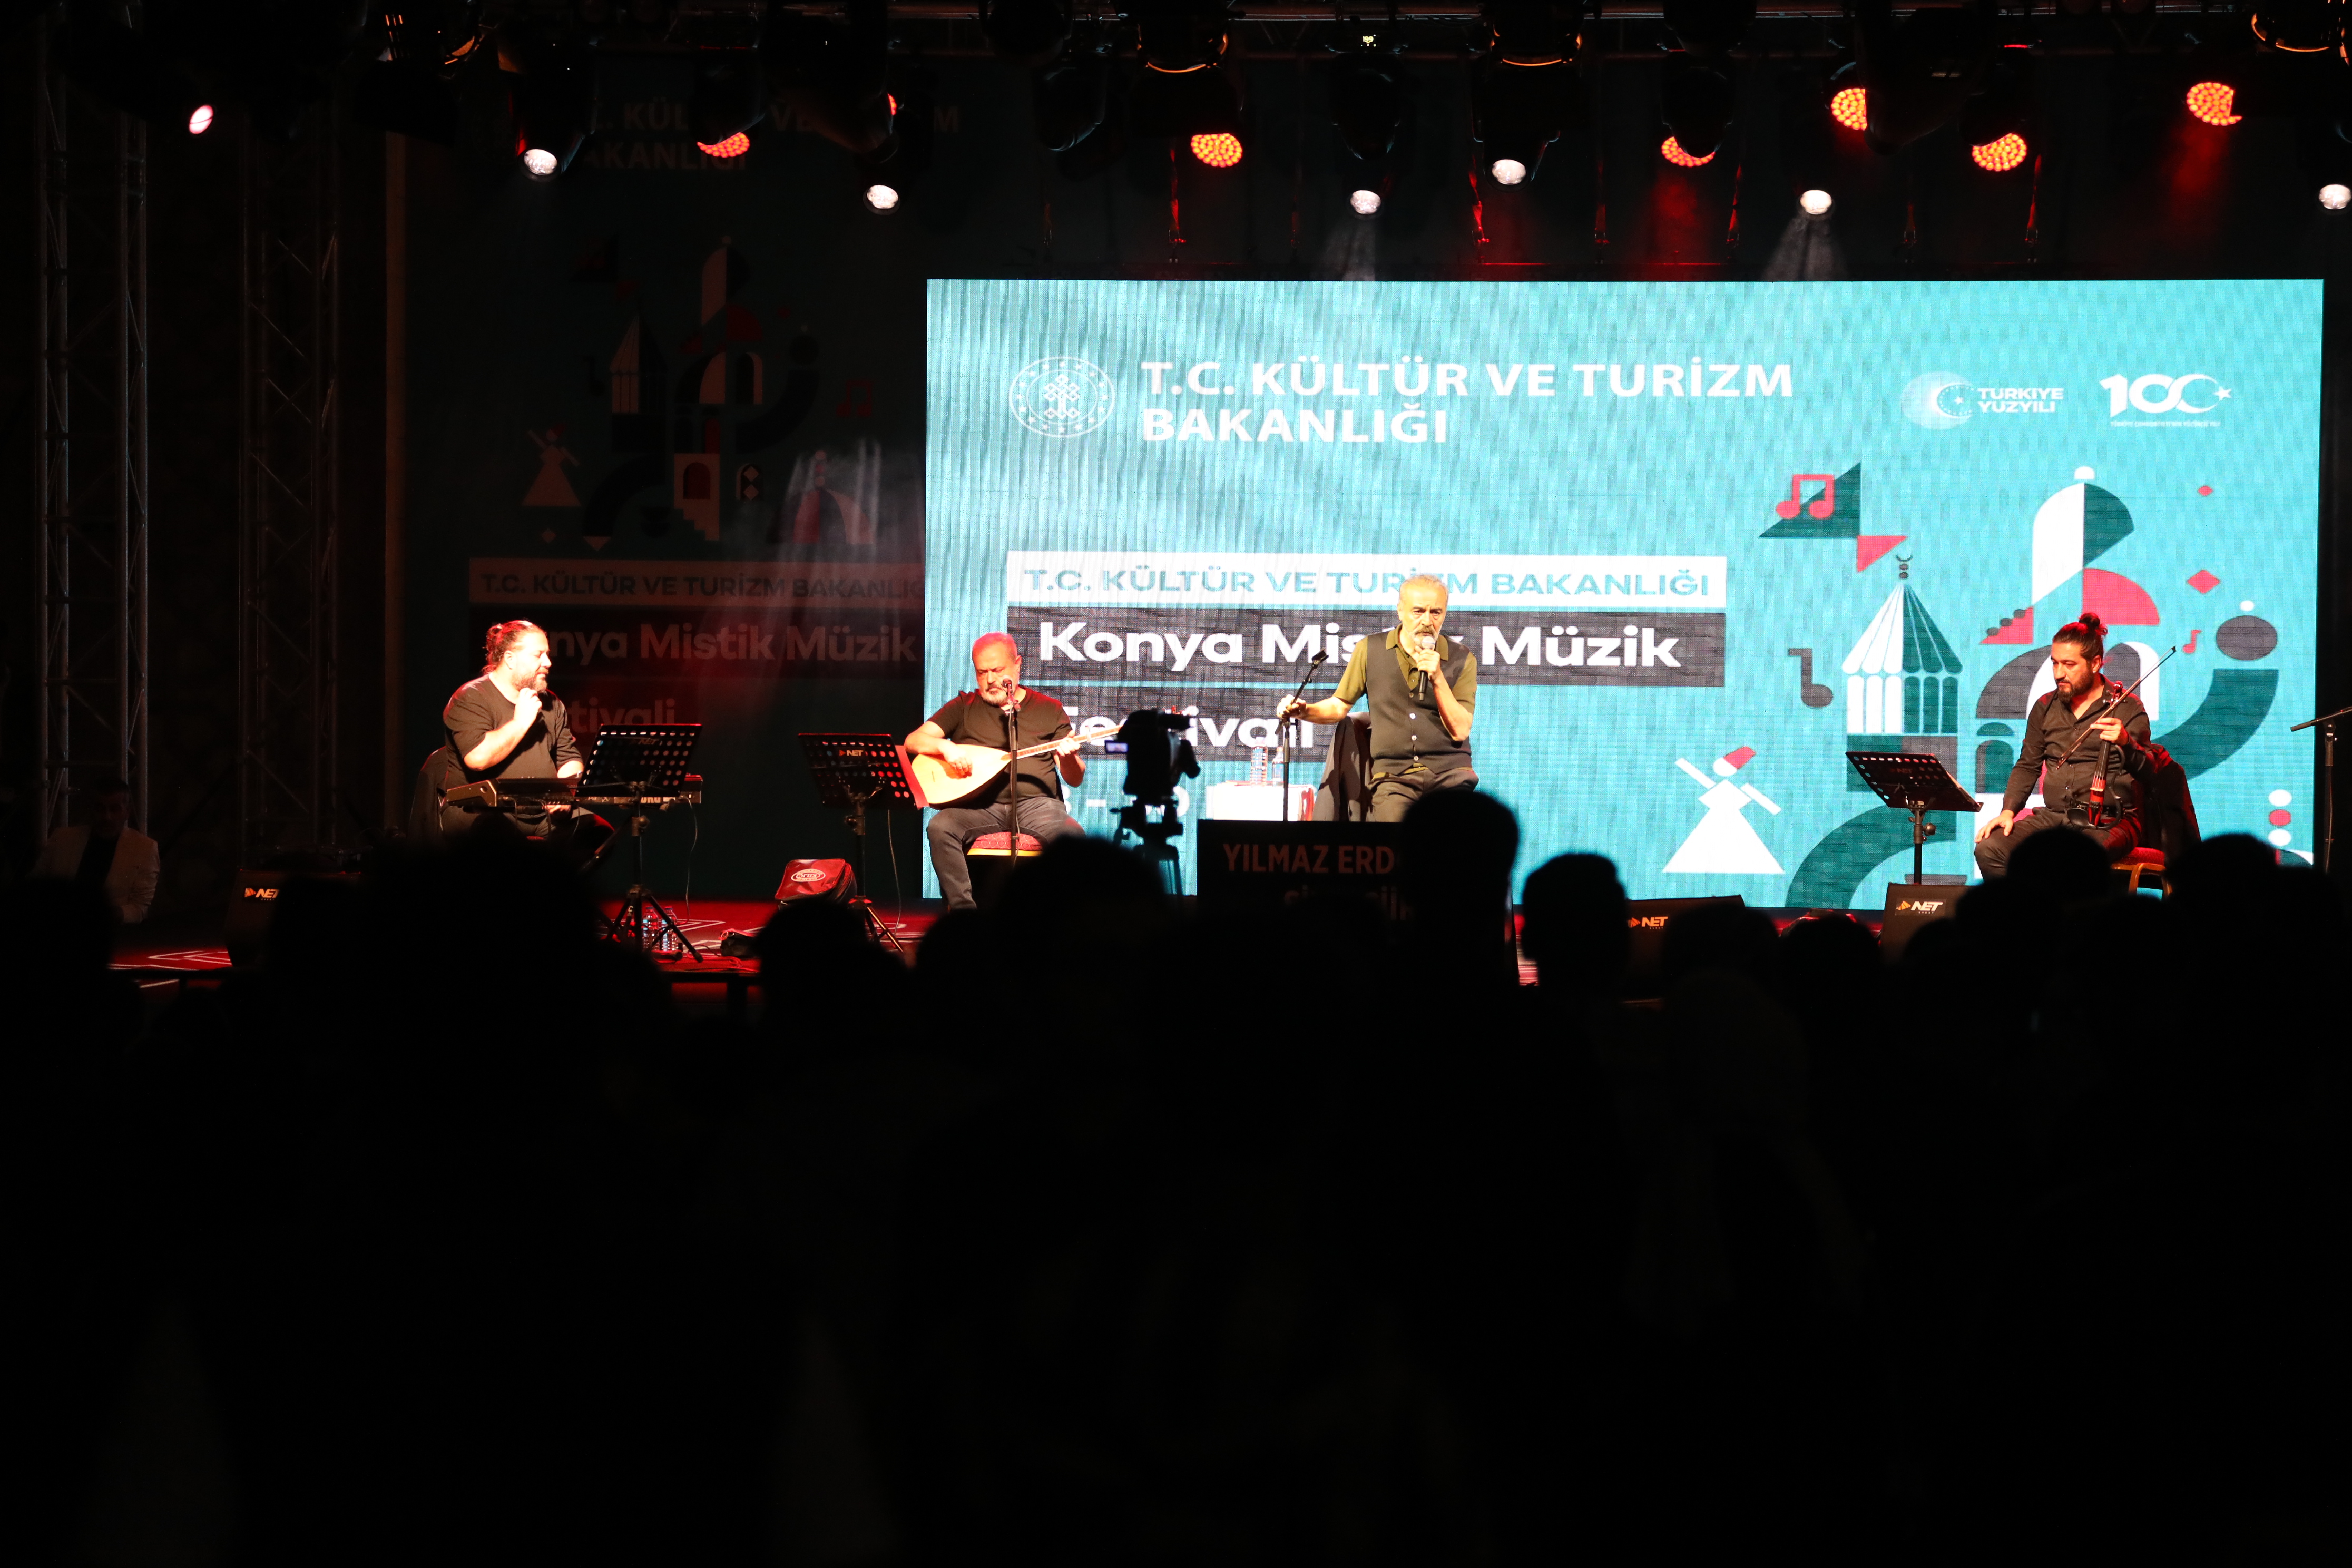 Konya Mistik Müzik Festivali’nin son gününde Yılmaz Erdoğan, Konyalılarla buluştu